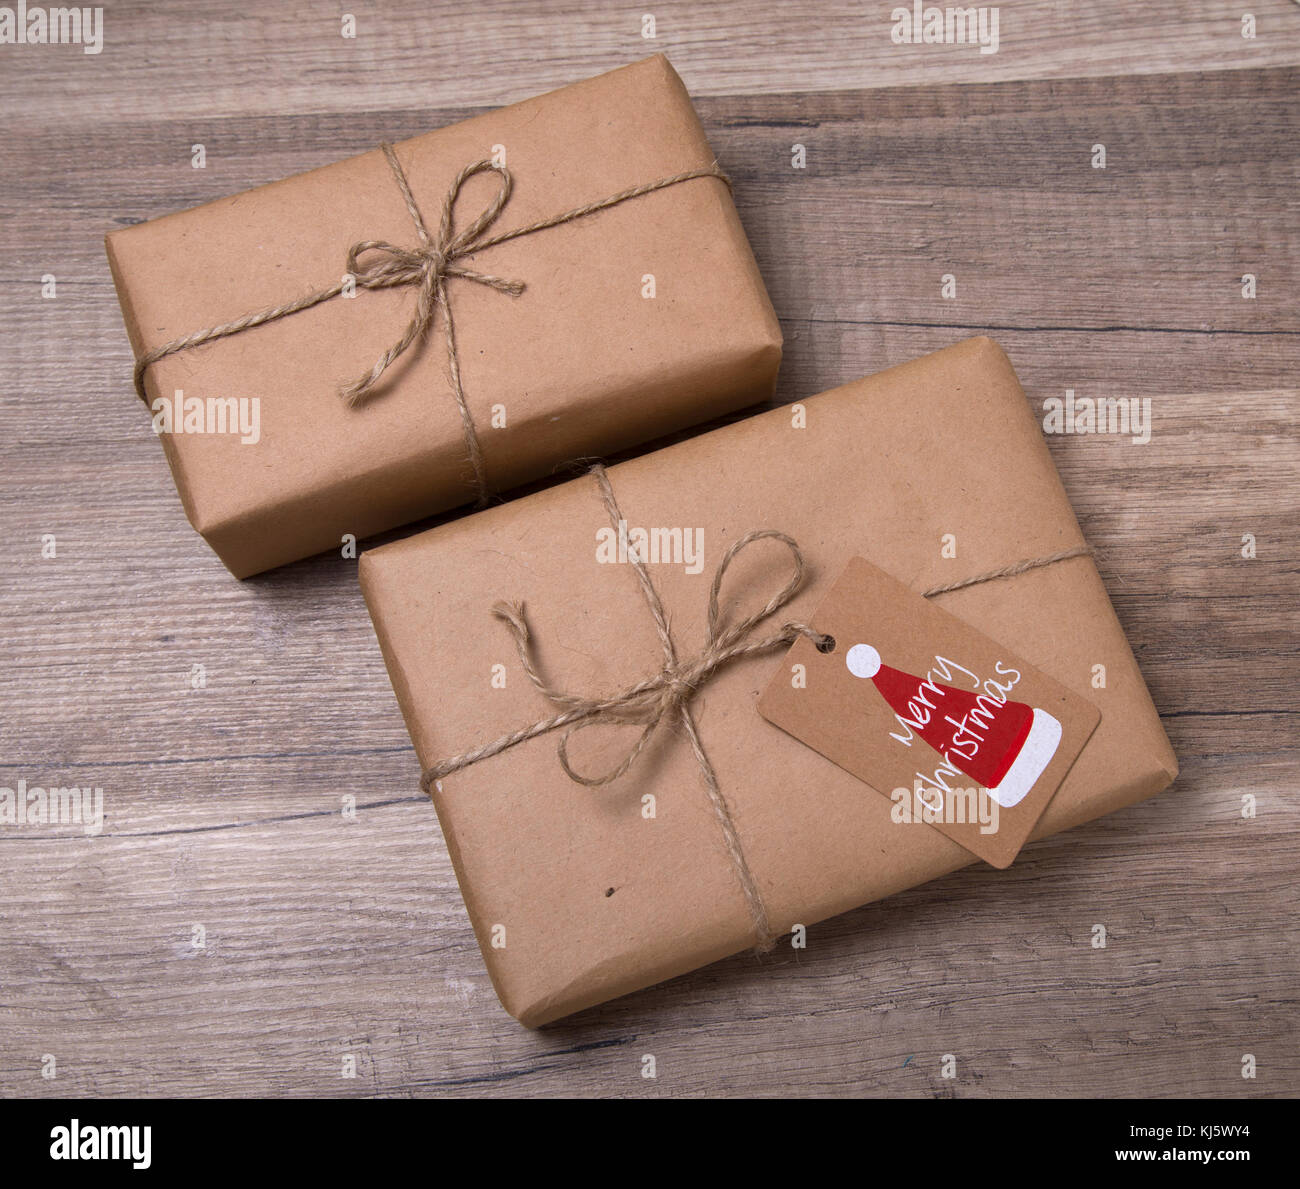 Navidad o año nuevo cajas de regalos envueltos en papel kraft con etiqueta  del regalo en blanco sobre fondo de madera vieja Fotografía de stock - Alamy